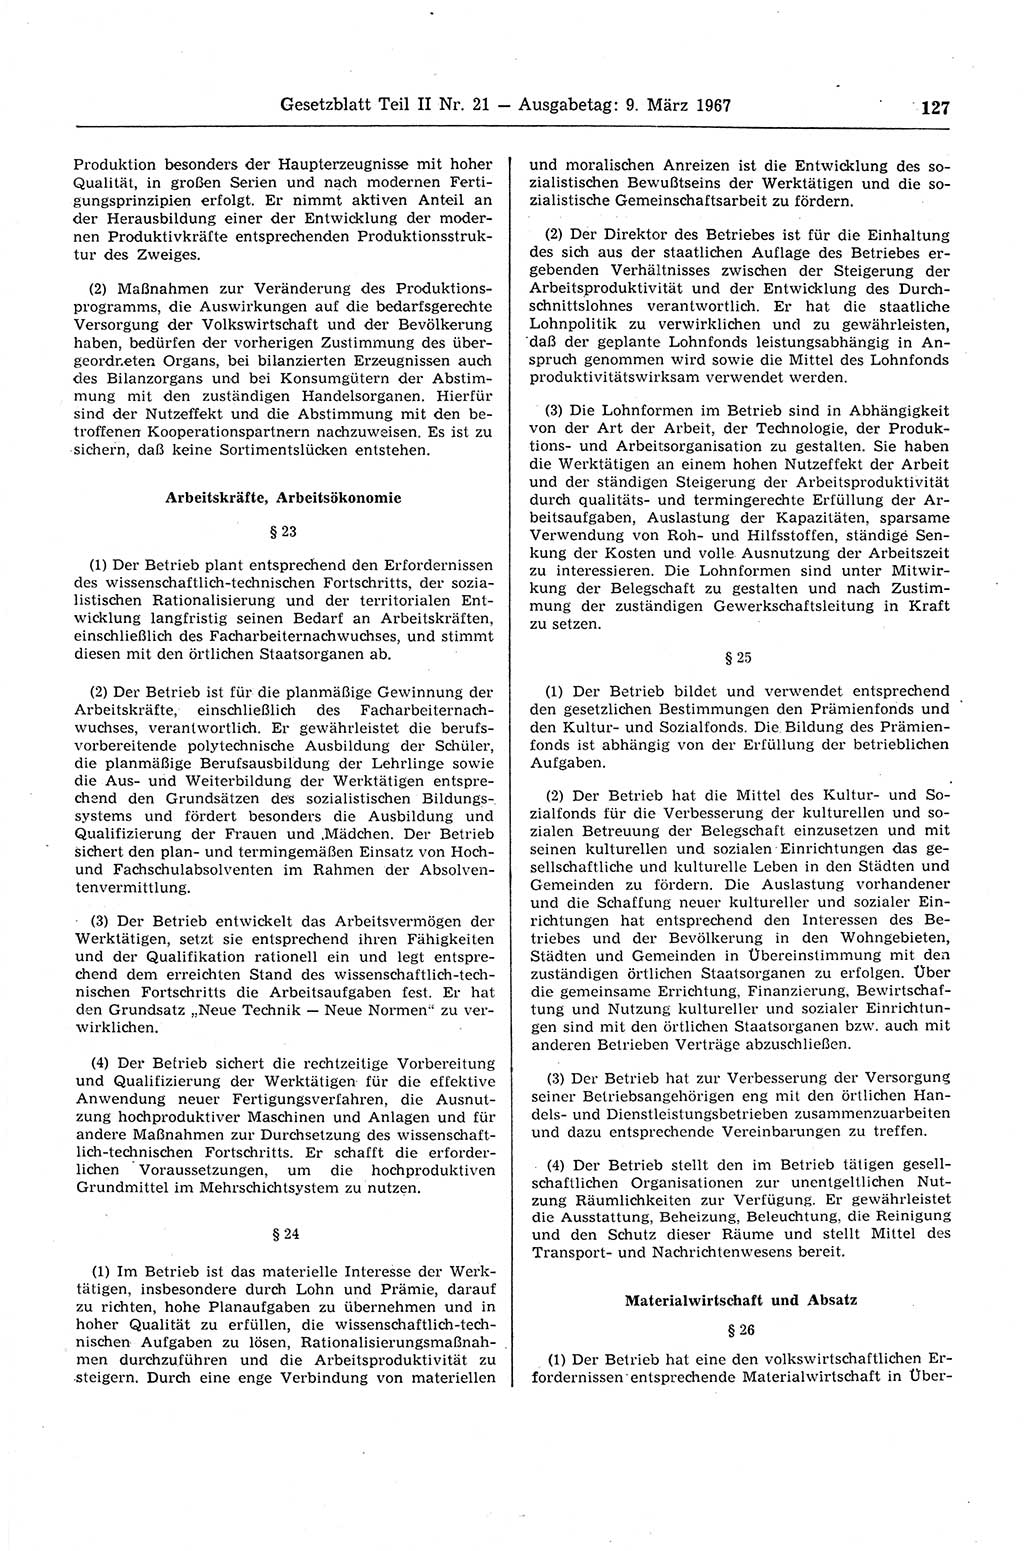 Gesetzblatt (GBl.) der Deutschen Demokratischen Republik (DDR) Teil ⅠⅠ 1967, Seite 127 (GBl. DDR ⅠⅠ 1967, S. 127)